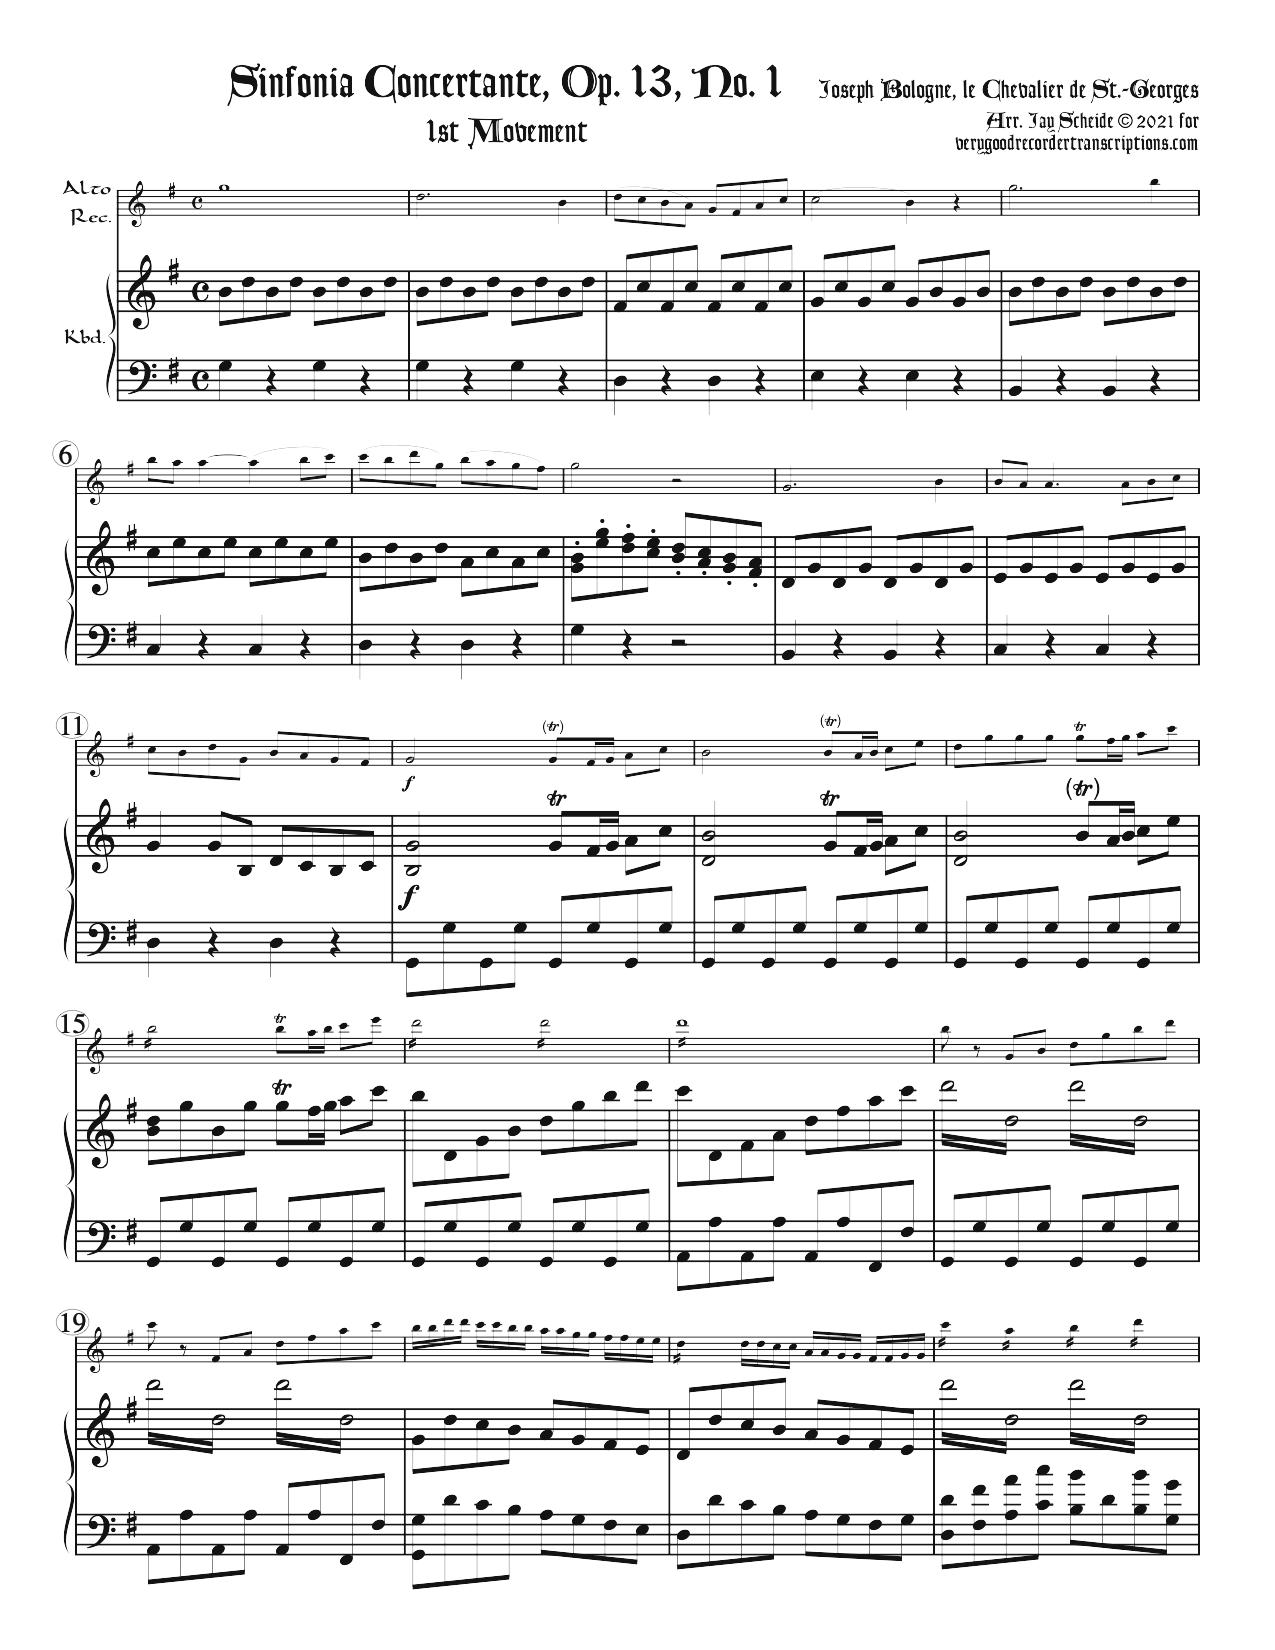 Sinfonia concertante, Op. 13, No. 1